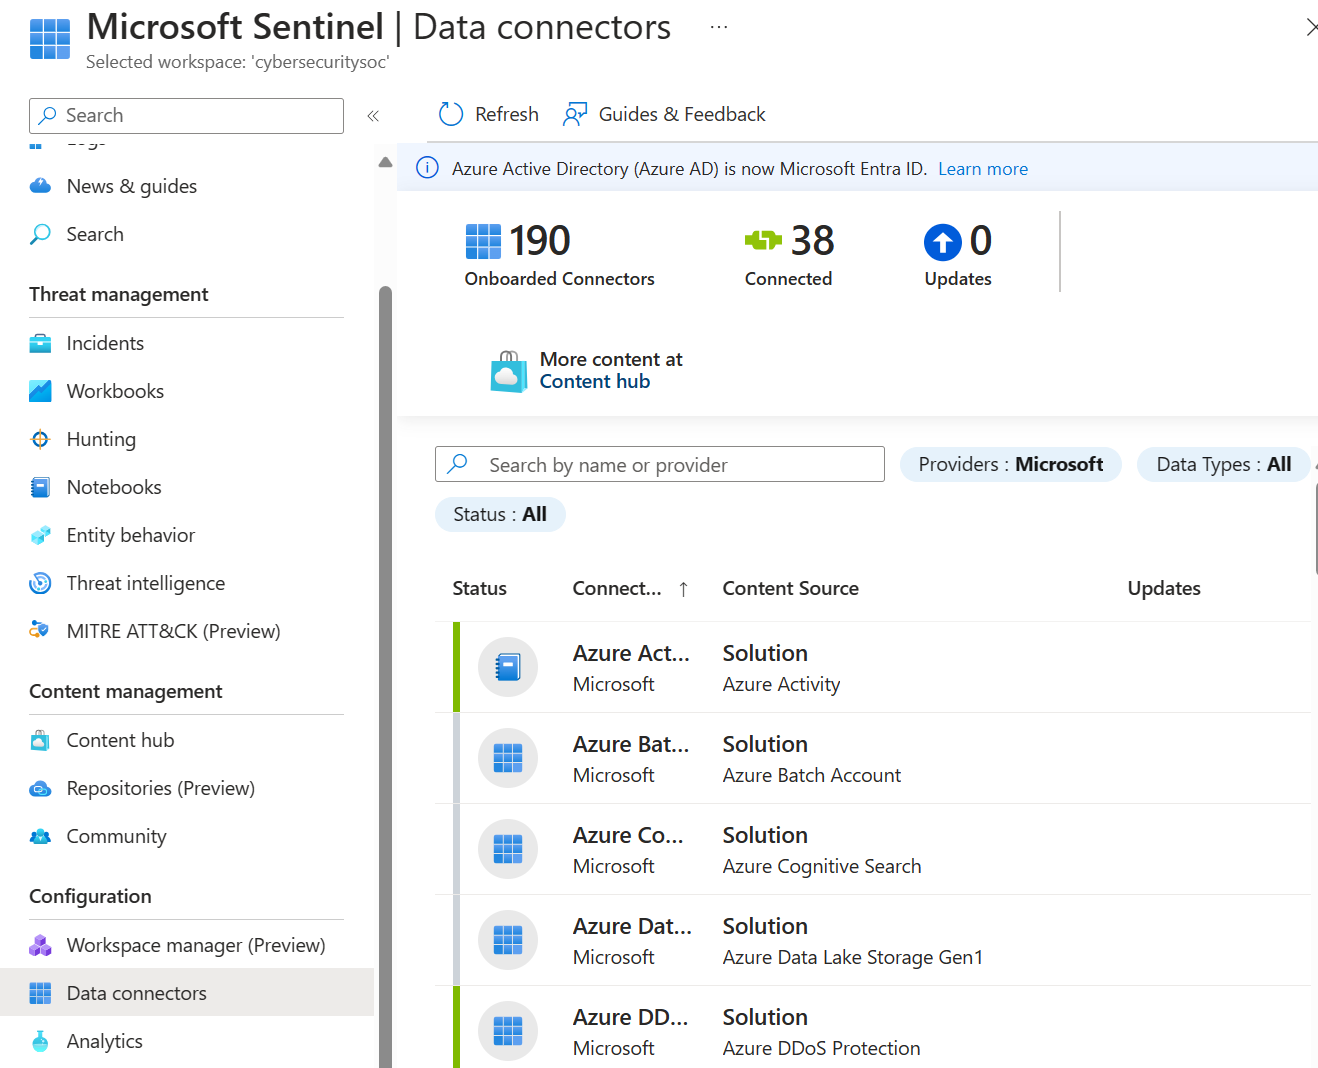 Captura de tela da página de conectores de dados no Microsoft Sentinel que mostra uma lista de conectores disponíveis.